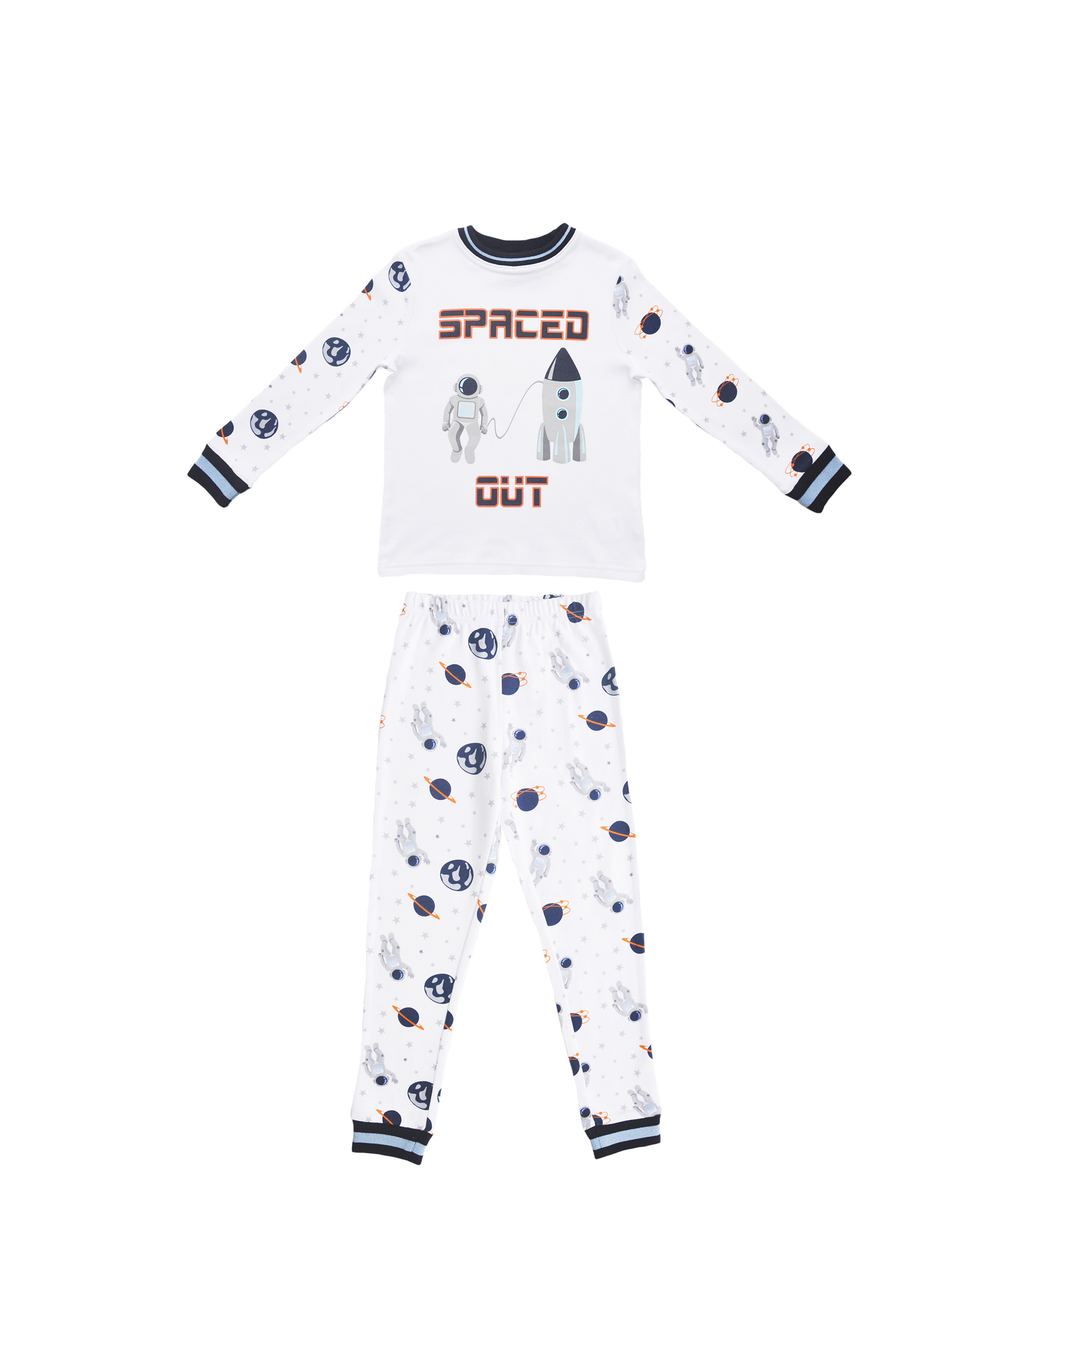 Pijama blanca manga larga con estampado de astronautas y naves